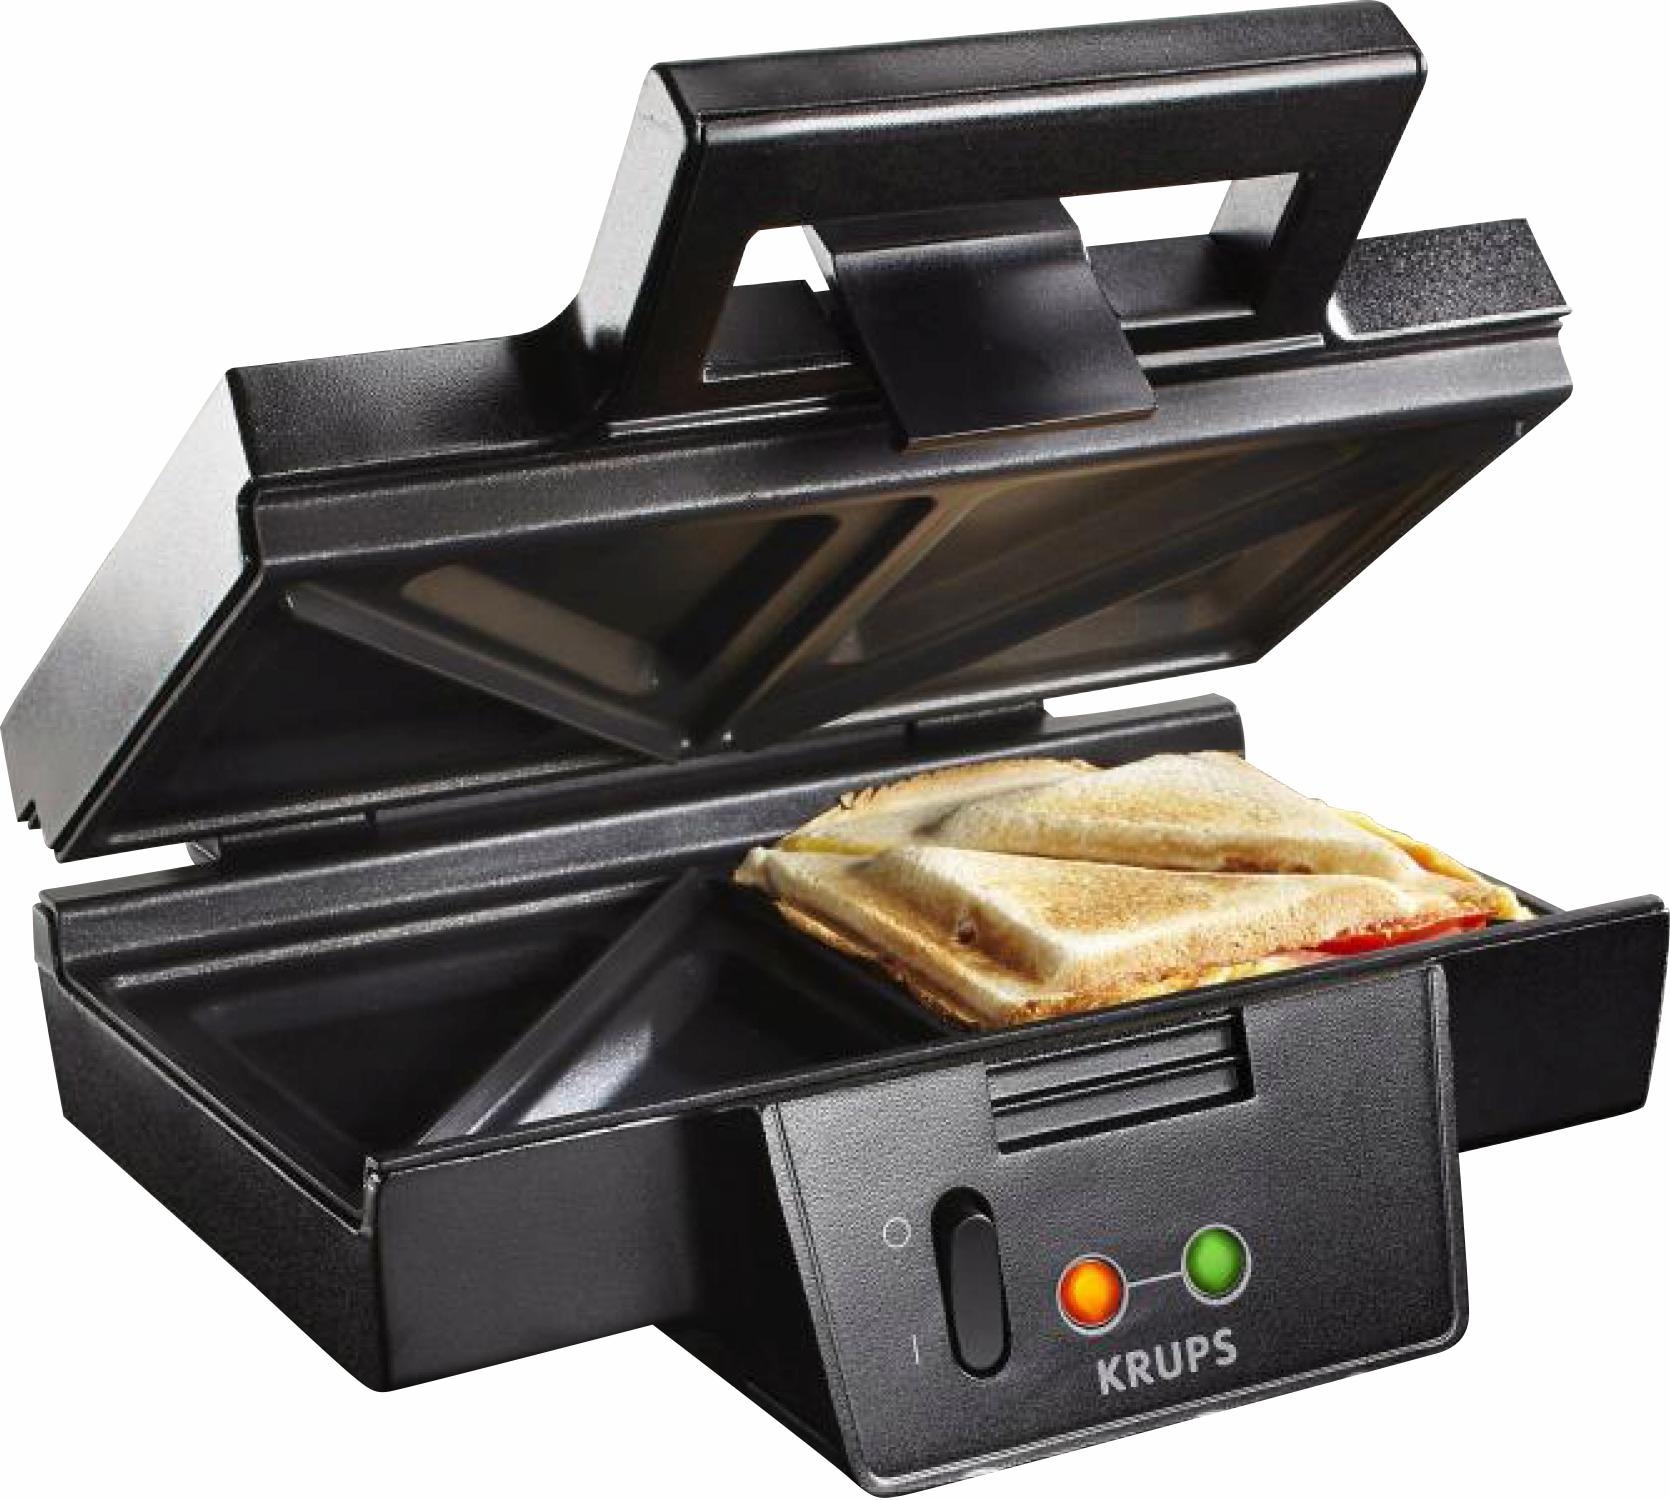 Krups Sandwichmaker FDK451, 850 Watt auf Rechnung kaufen